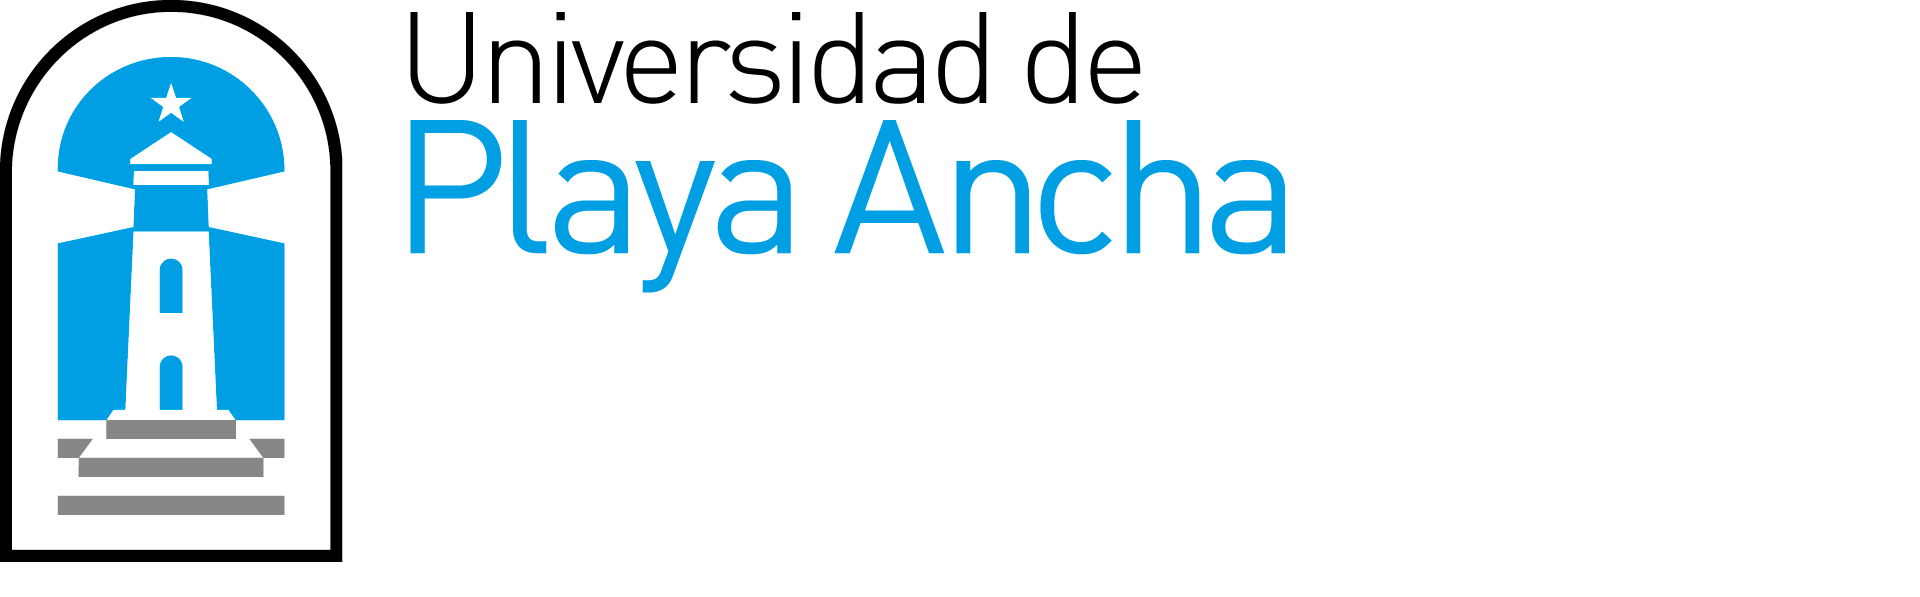 Universidad de Playa Ancha - Facultad de Ciencias Naturales y Exactas - Logo - Letras blancas